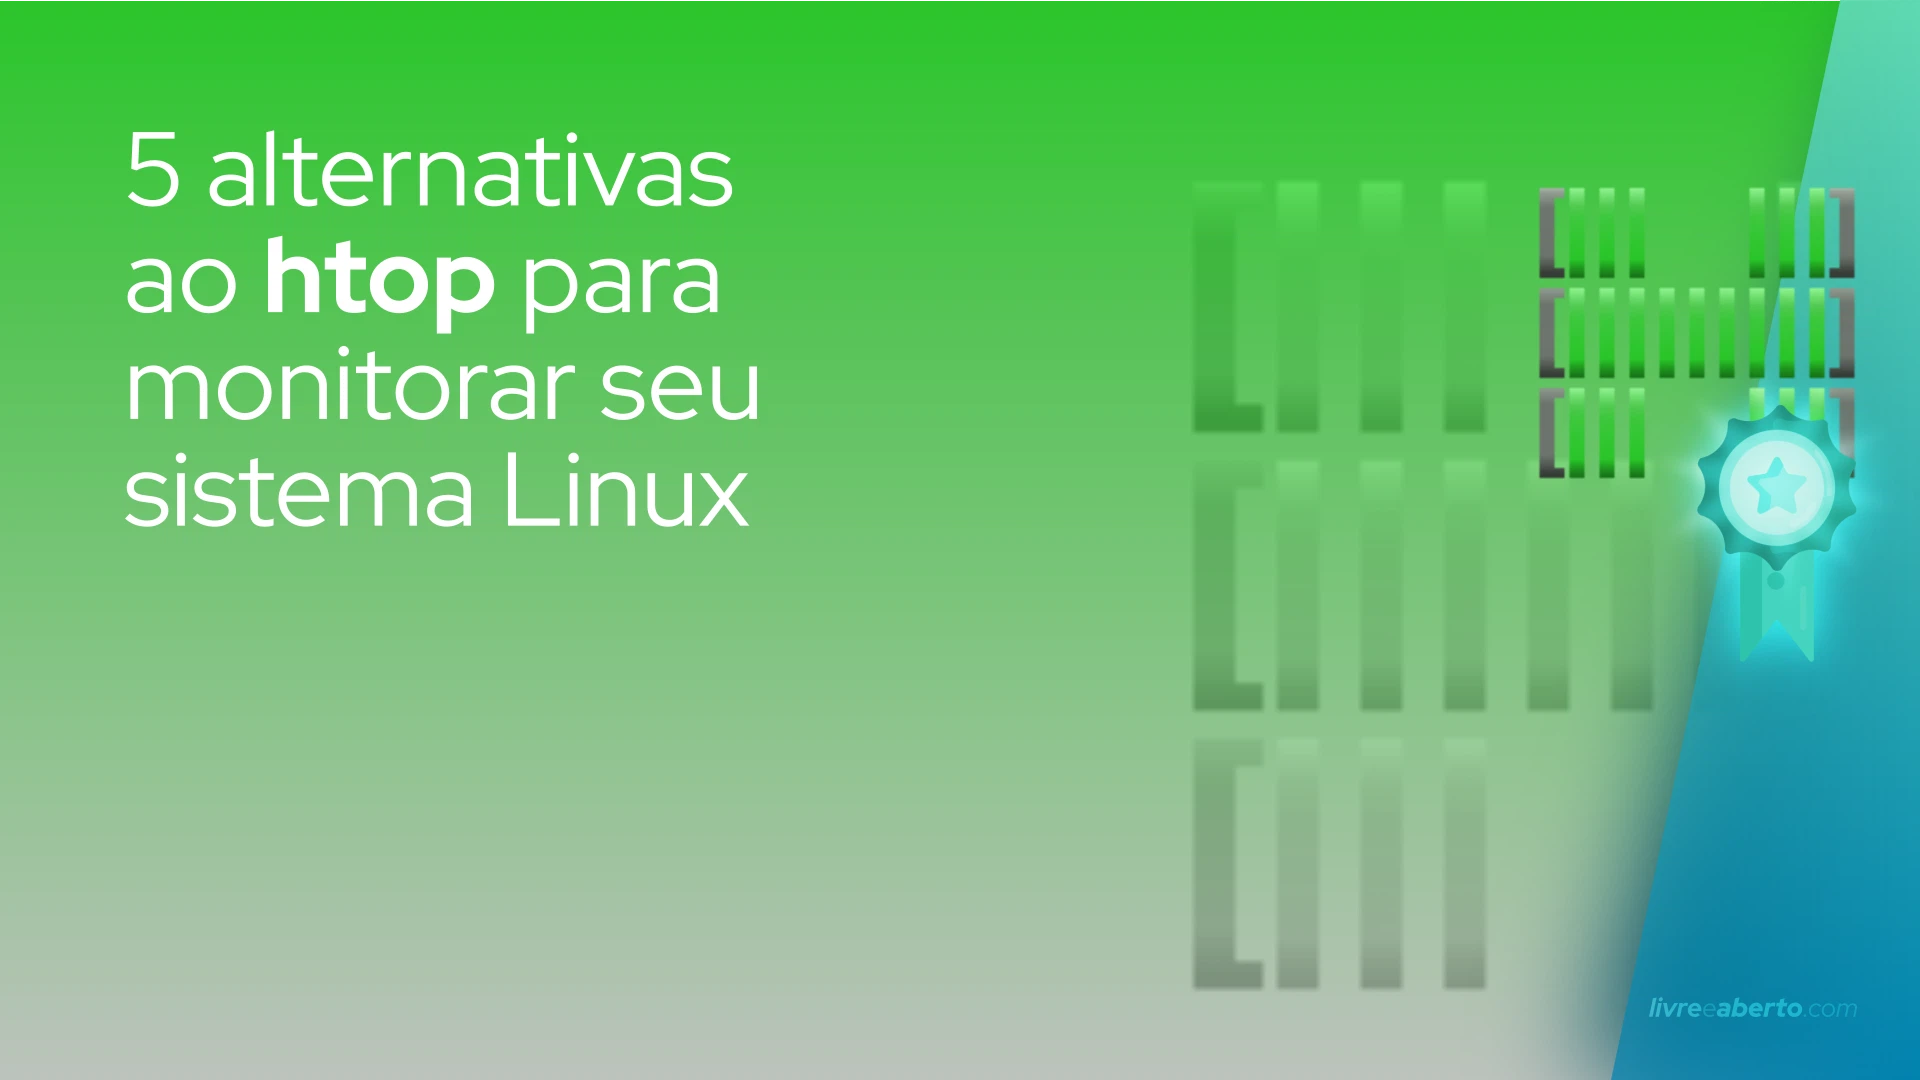 5 alternativas ao htop para melhorar sua experiência de monitoramento do sistema Linux